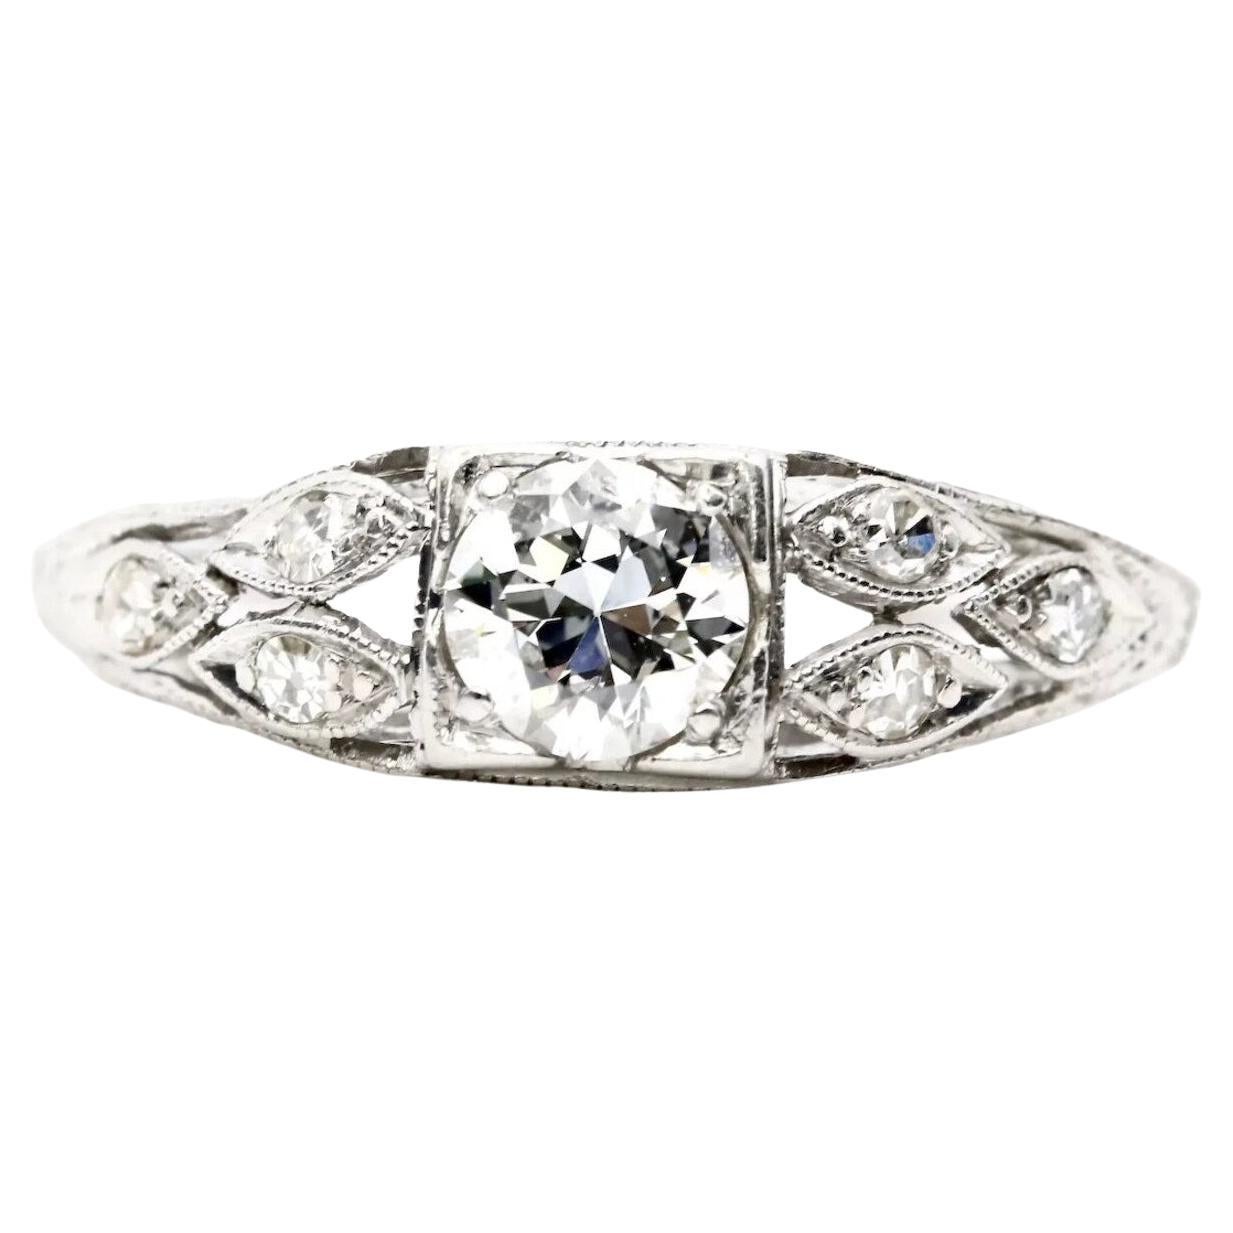 Art Deco 0.58ct European Cut Diamond Engagement Ring in Platinum